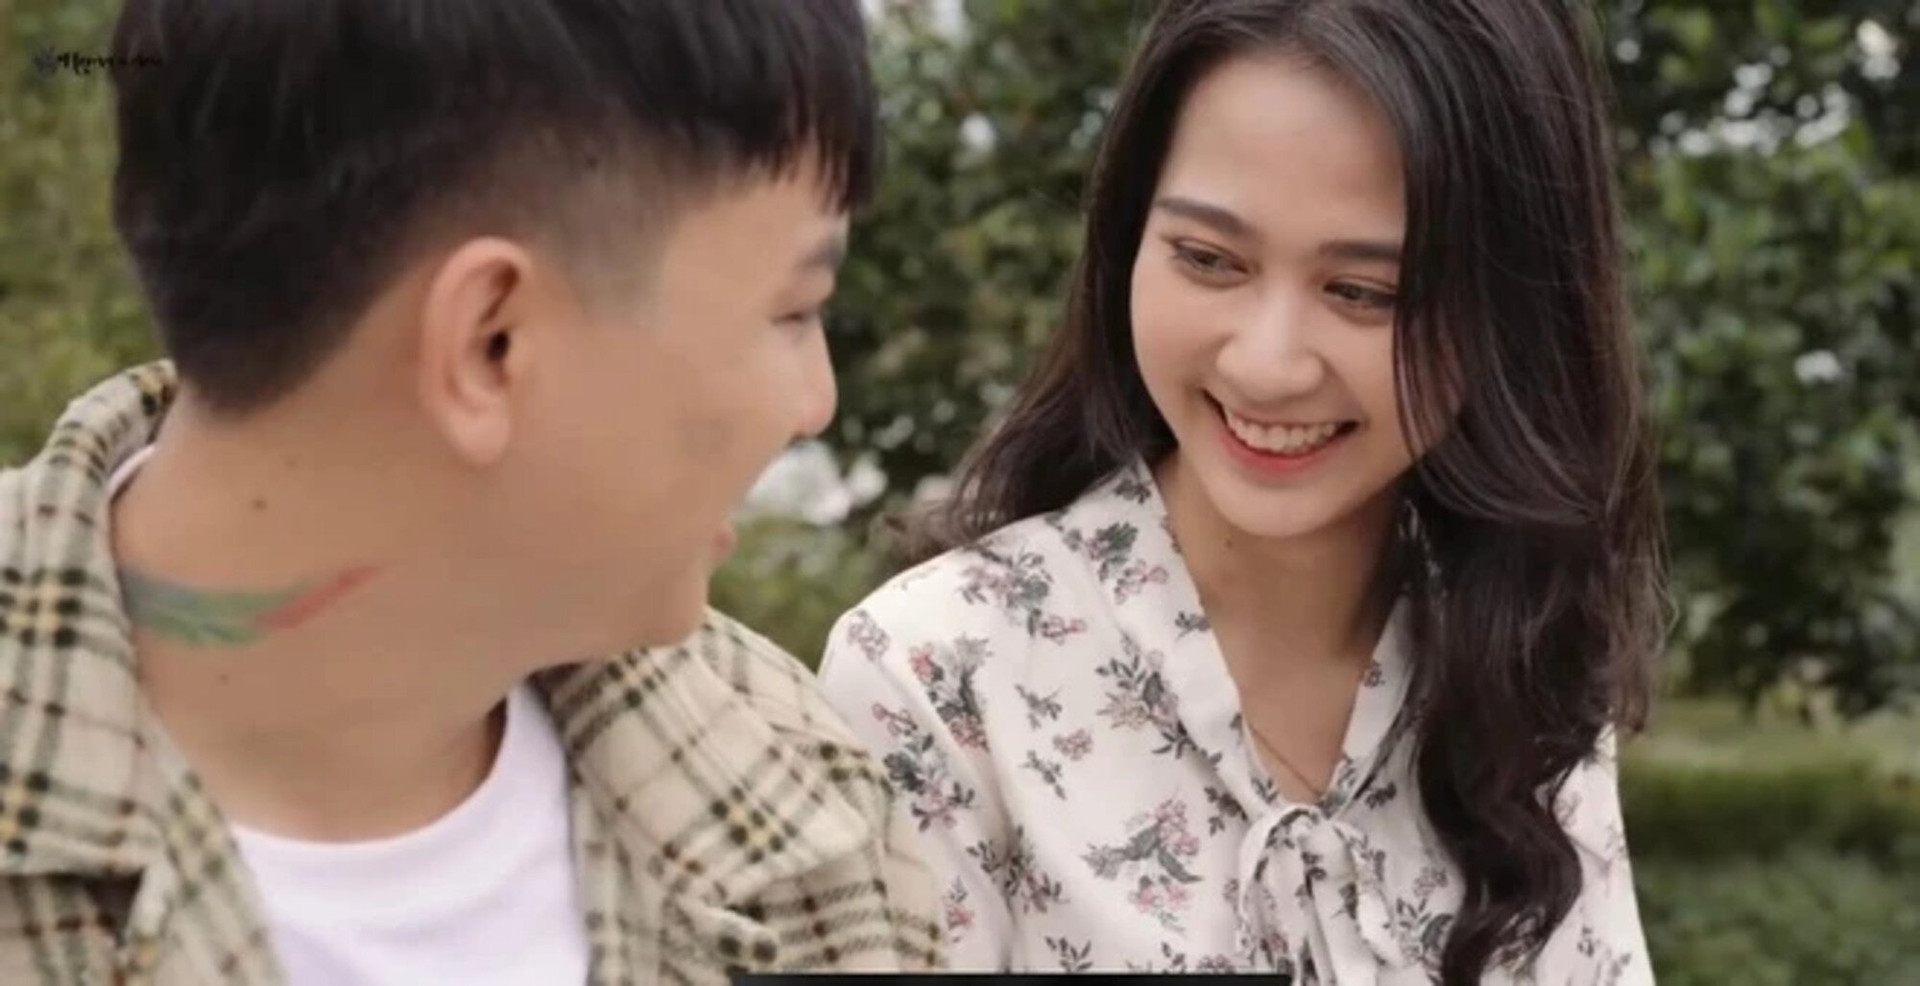 Hoài Lâm và bạn gái nảy sinh tình cảm sau khi đóng chung MV Người mới ra mắt tháng 10/2021.